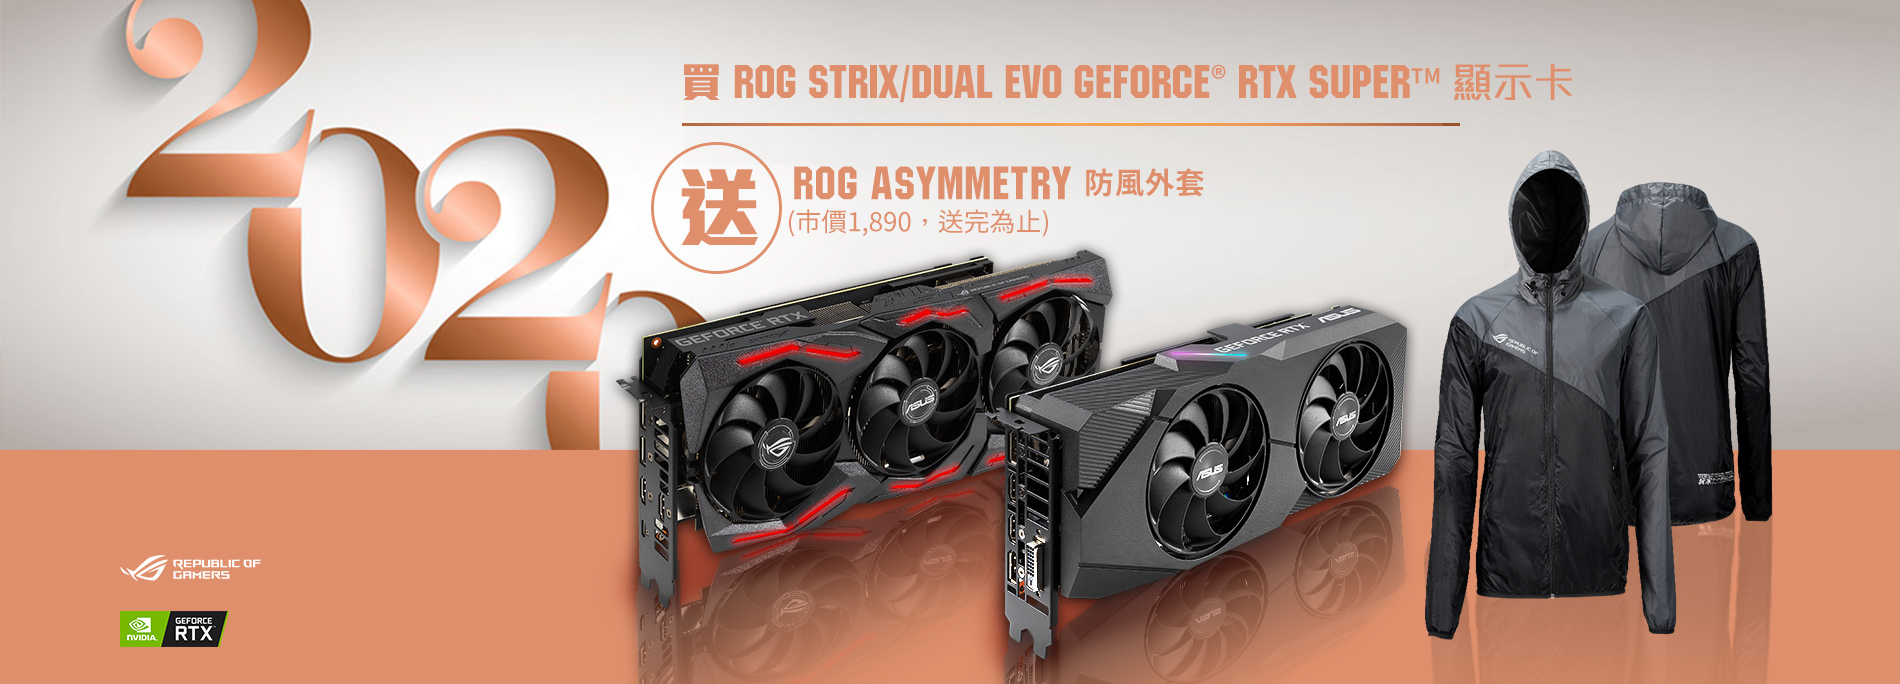 活動期間購買 ROG Strix & Dual EVO GeForce® RTX 2080 / 2070 / 2060 Super  顯示卡，官網登錄送『ROG Asymmetry 防風外套』(價值$1,890，數量有限送完為止)